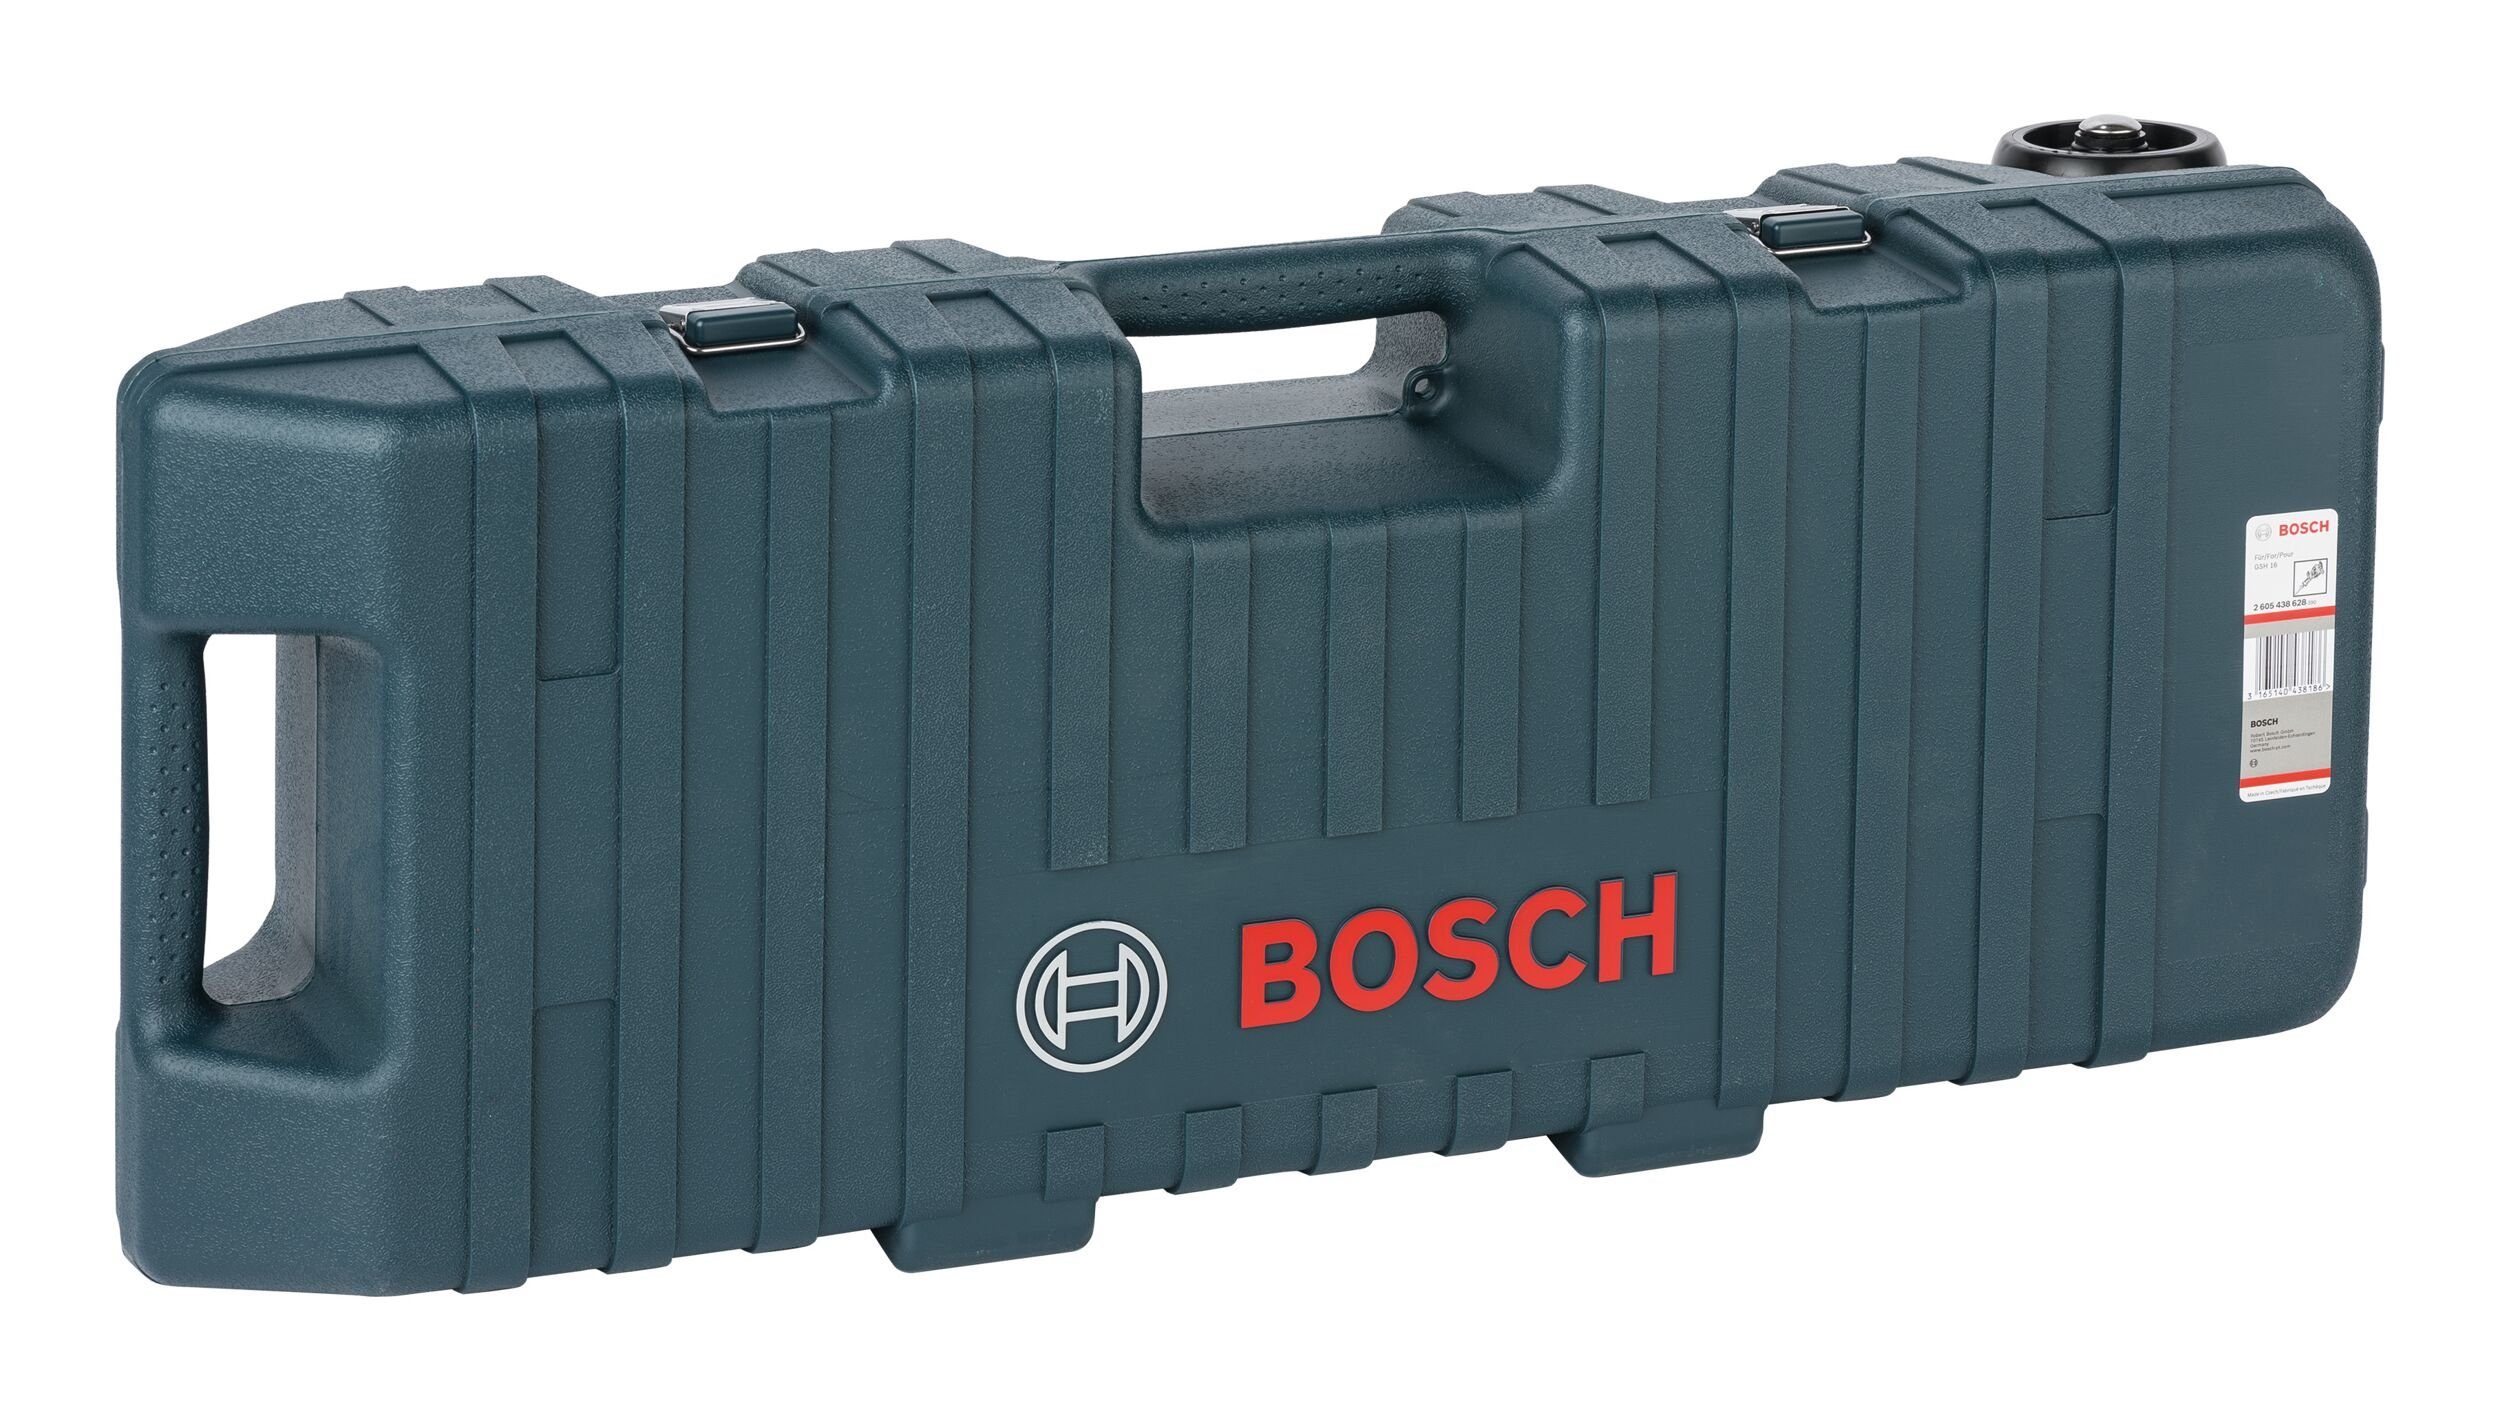 x 355 - Bosch x & Kunststoffkoffer Garden 228 Home mm 895 Werkzeugkoffer,